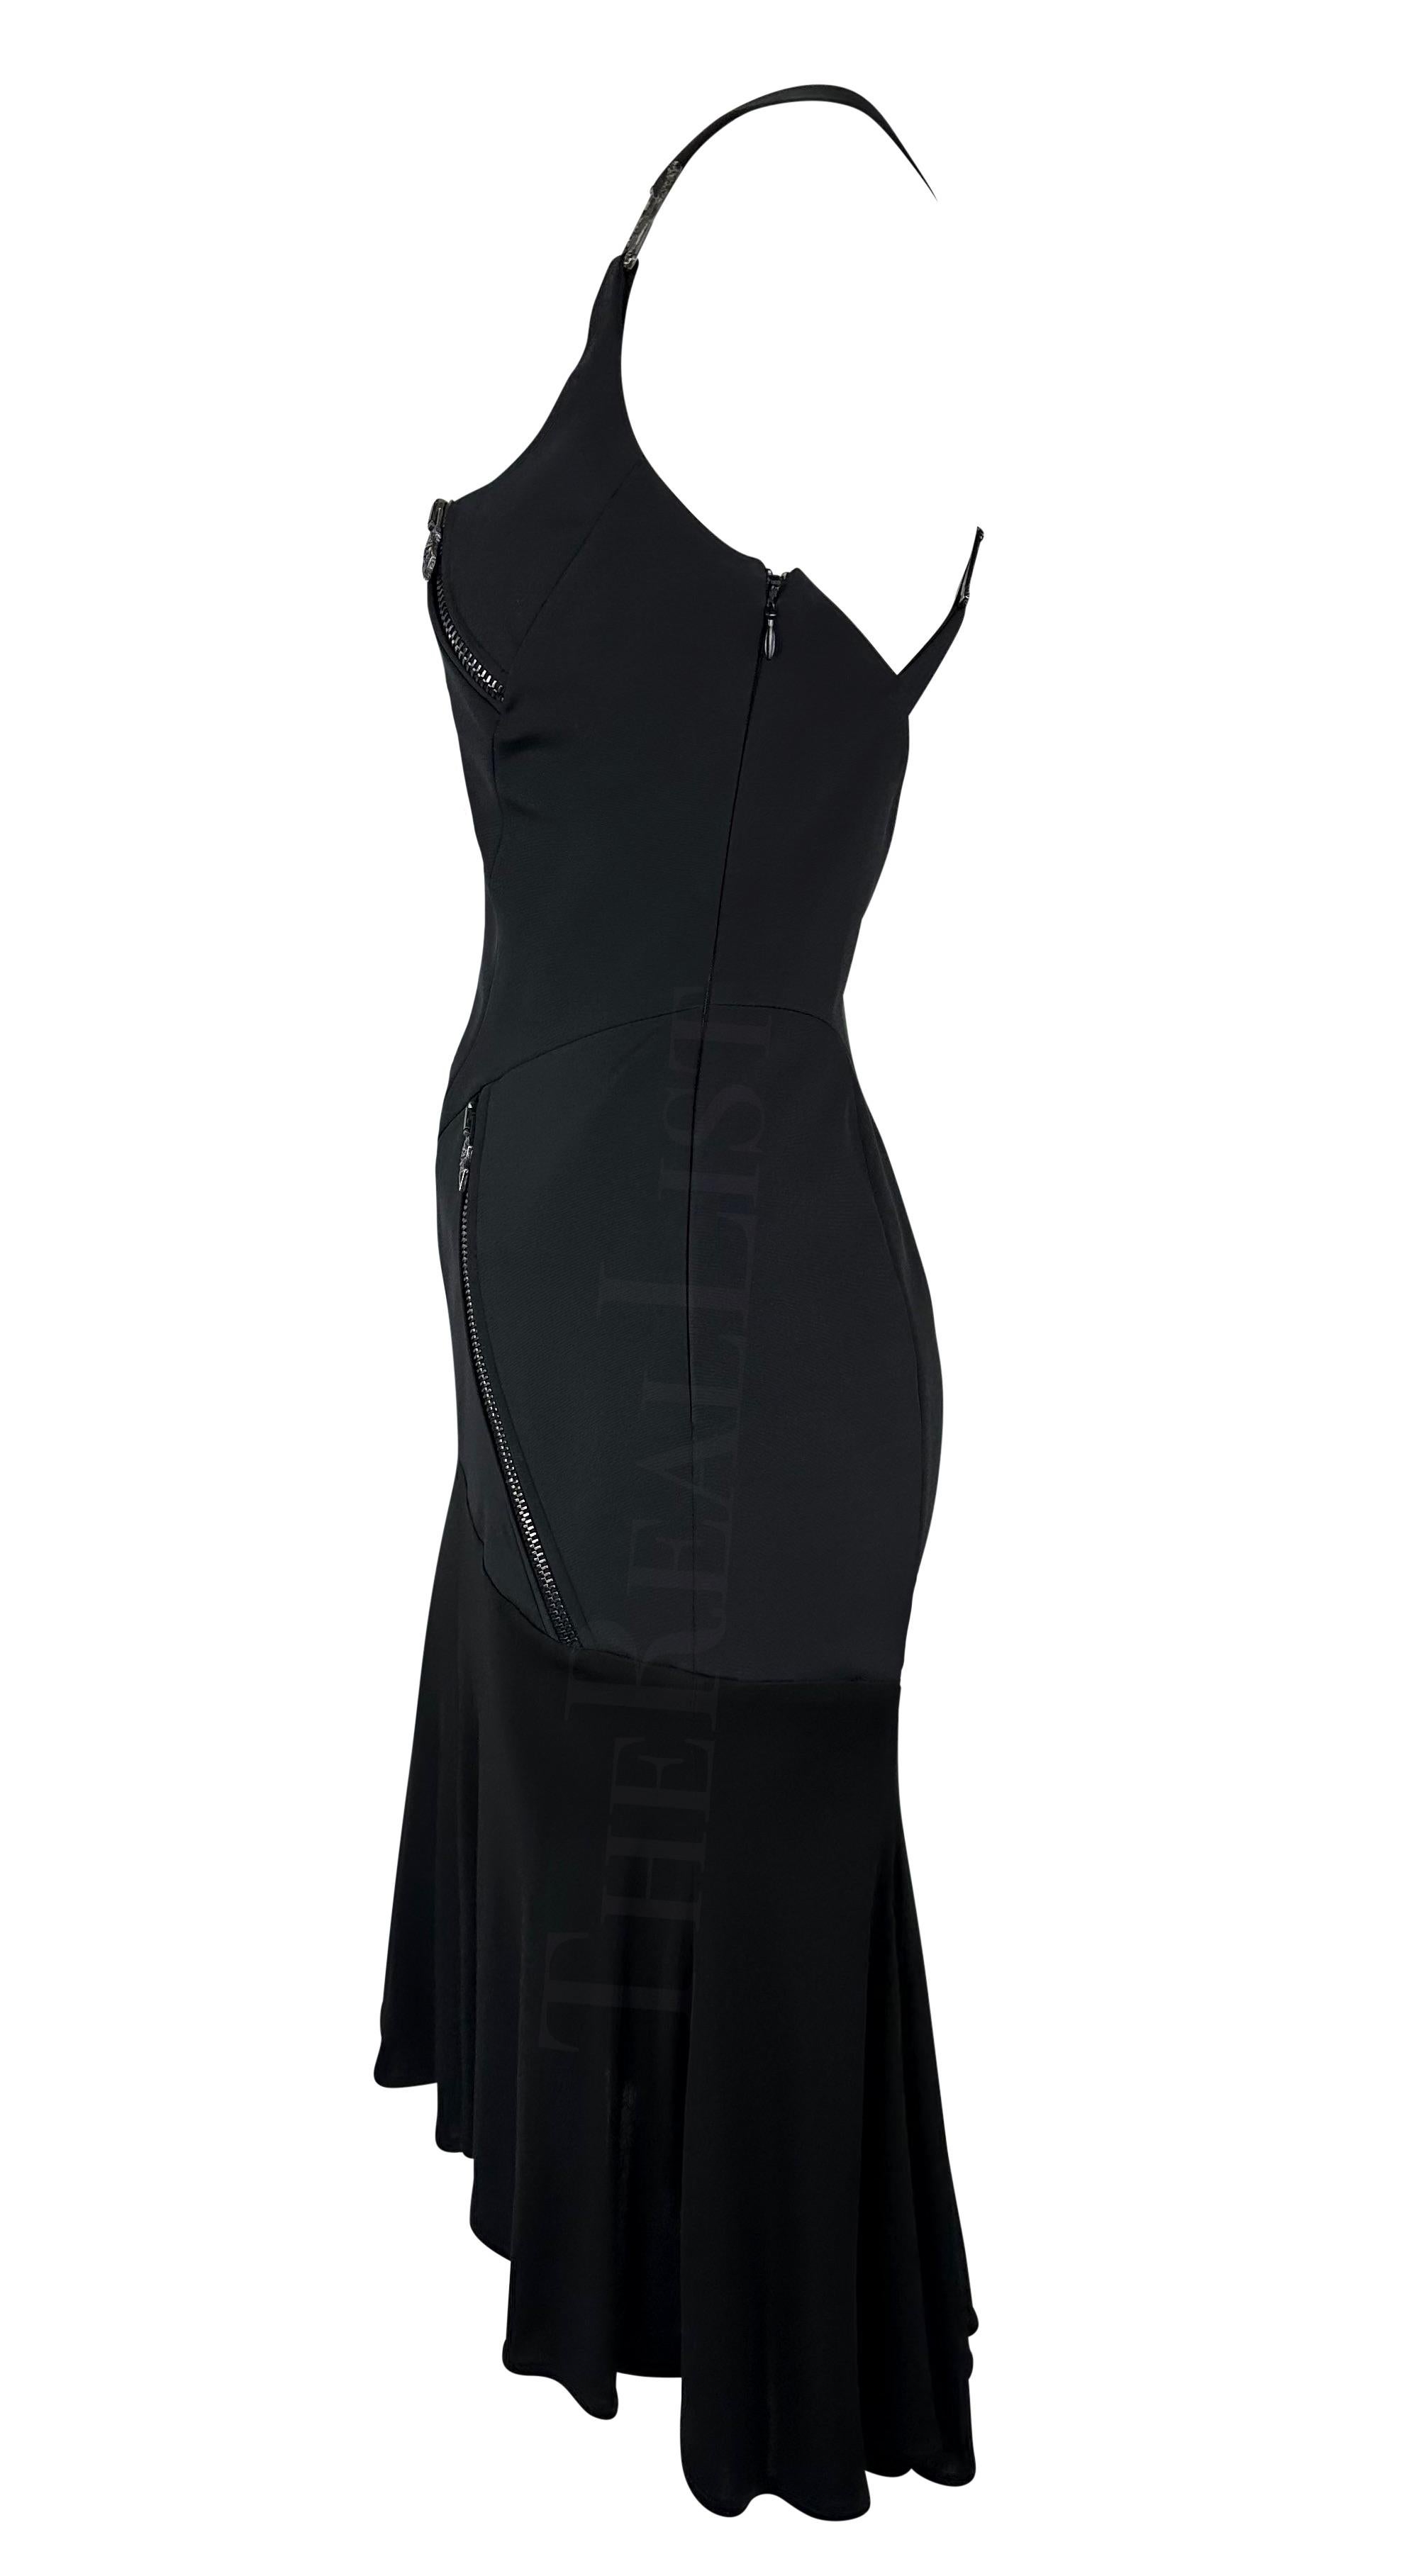 versace 2003 dress